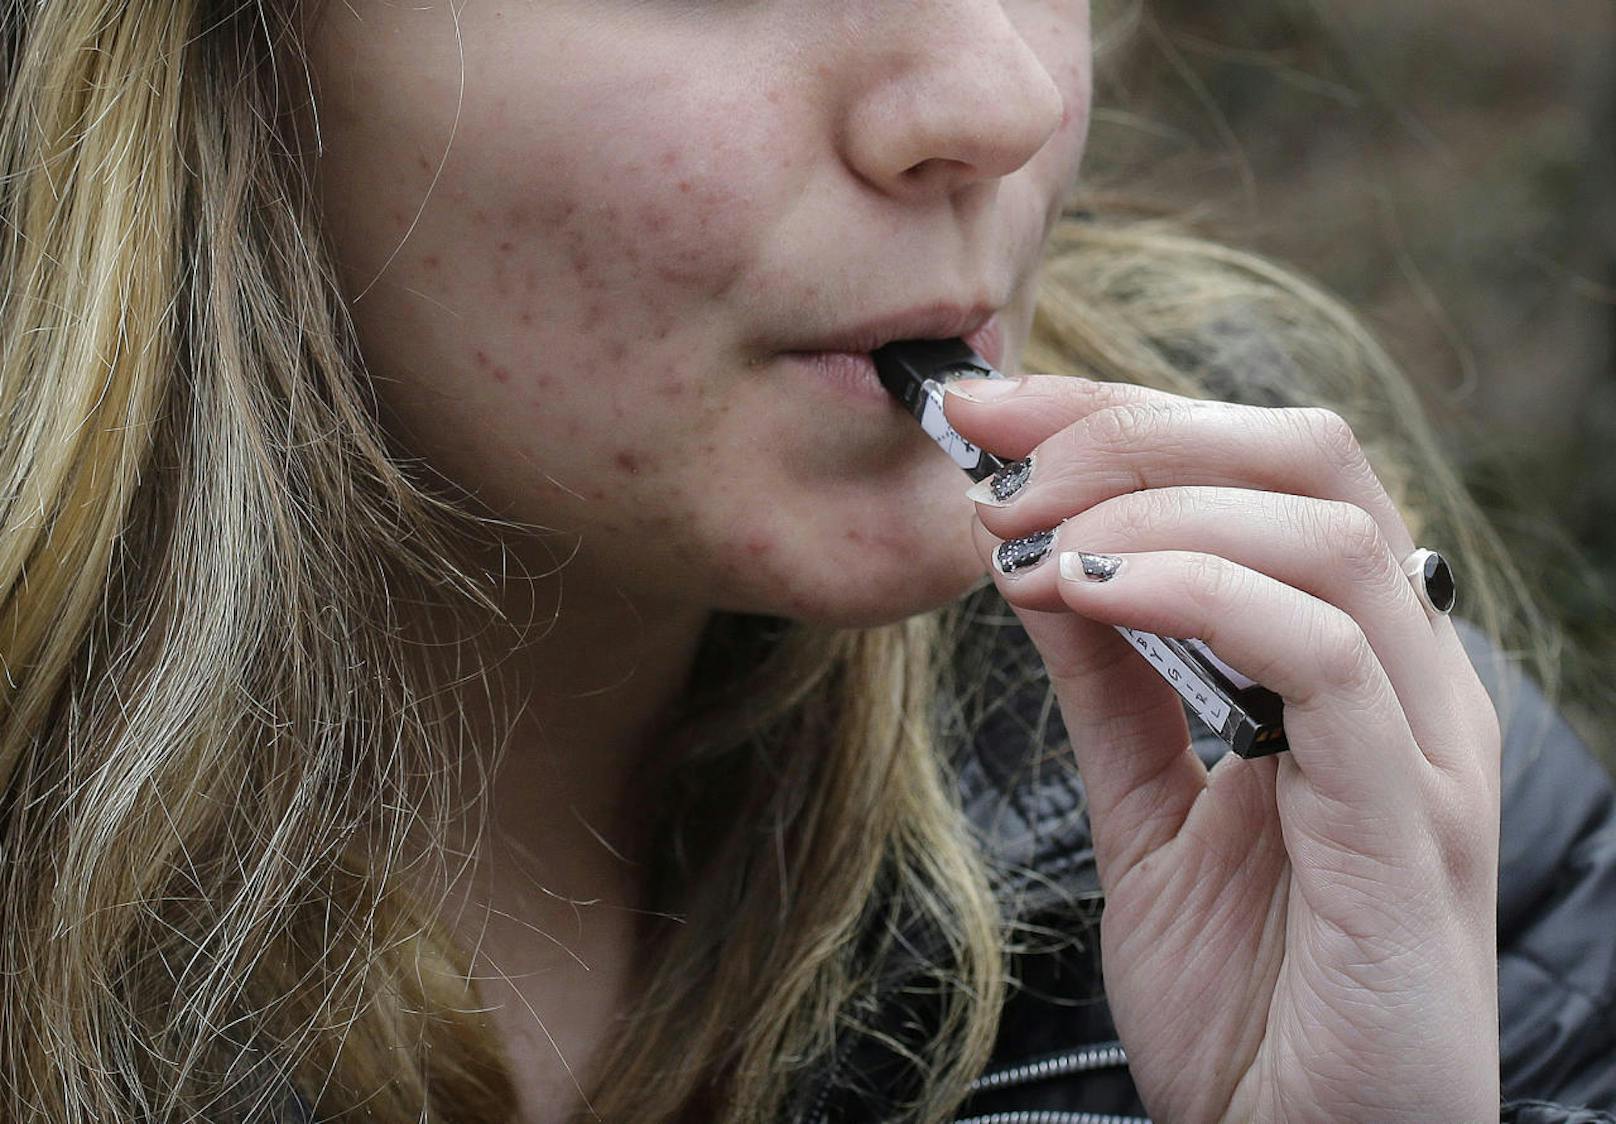 Die E-Zigarette Juul ist bei Teenagern in den USA extrem populär - obwohl sie eigentlich gar nicht für diese gedacht ist, sondern erwachsenen Rauchern beim Aufgeben ihres Lasters helfen soll.